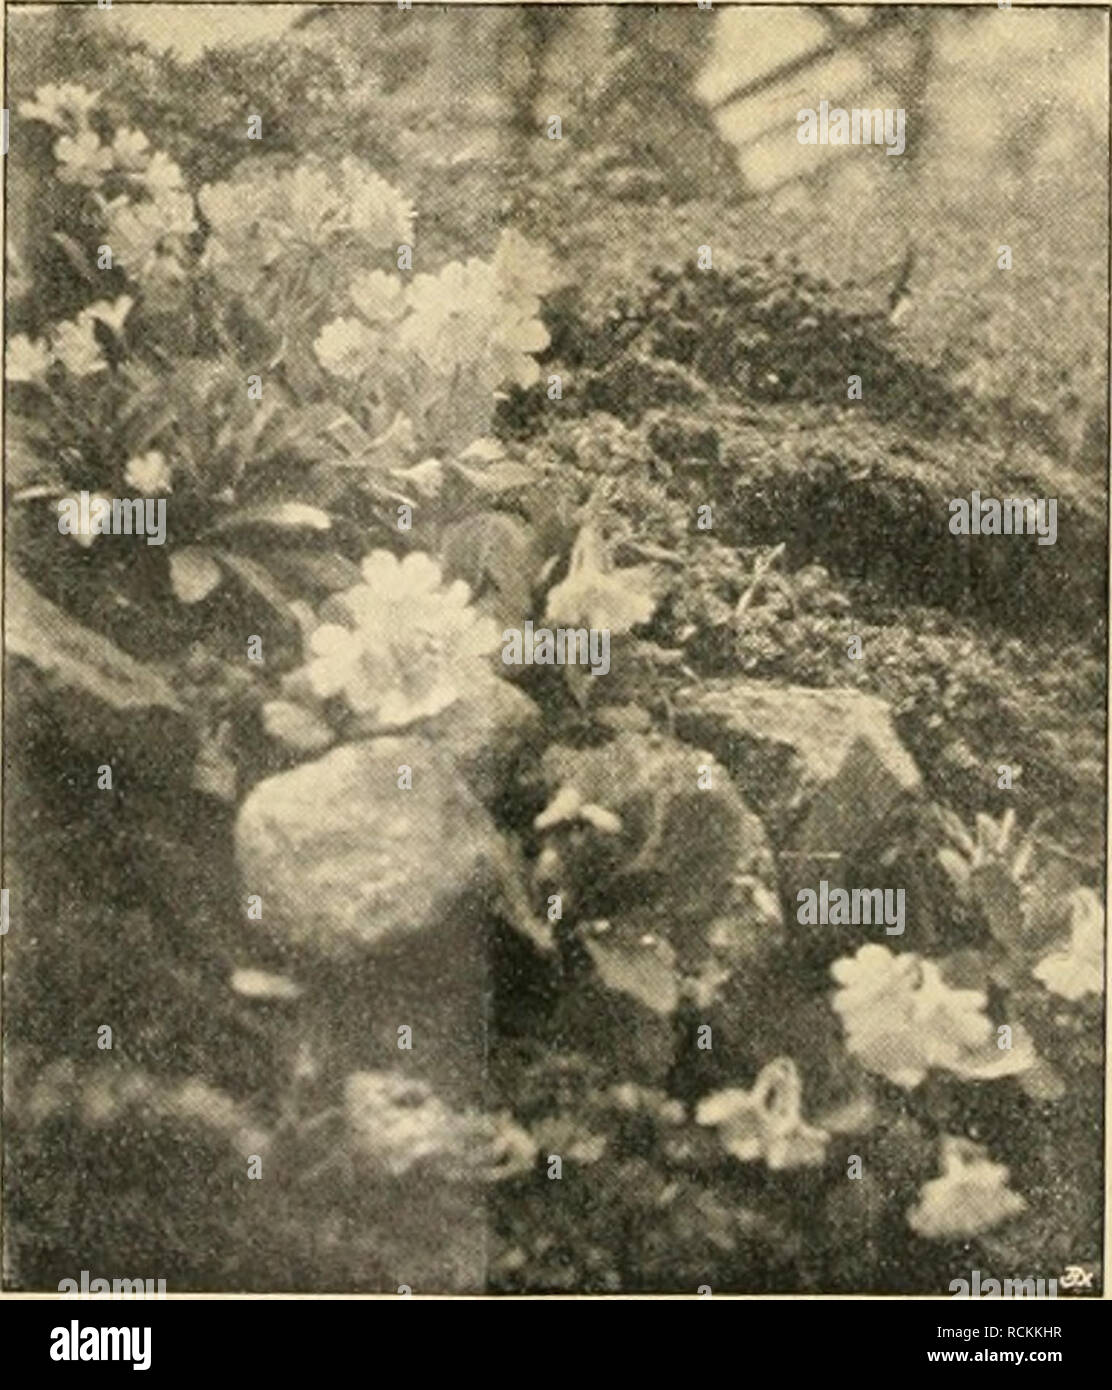 . Die Gartenwelt. Gardening. 170 Dip (TiirteuweU. XXII, 22 fordert wird, nur von den besten, reichst- und frühest- blühenden, sowie schönstblühenden Standpflanzen Veredlungs- reiser zu nehnnen. Ein Beispiel, wie durch Einzelauslese eine Pflanze hoch- gezüchtet werden kann, zeigen die diesen Zeilen beigegebenen beiden Abbildungen von Ruellia (Strobilanthus) anisophylla, eine, nebenbei bemerkt, allerliebste Pflanze des Kalthauses, die bei Angebot (im Zustande wie Abb. 1) sicher als kleine Topfpflanze in der blumenarmen Zeit Dezember - Februar mit ihren angenehmen bläulichweißen Blumen auf Absatz Stock Photo